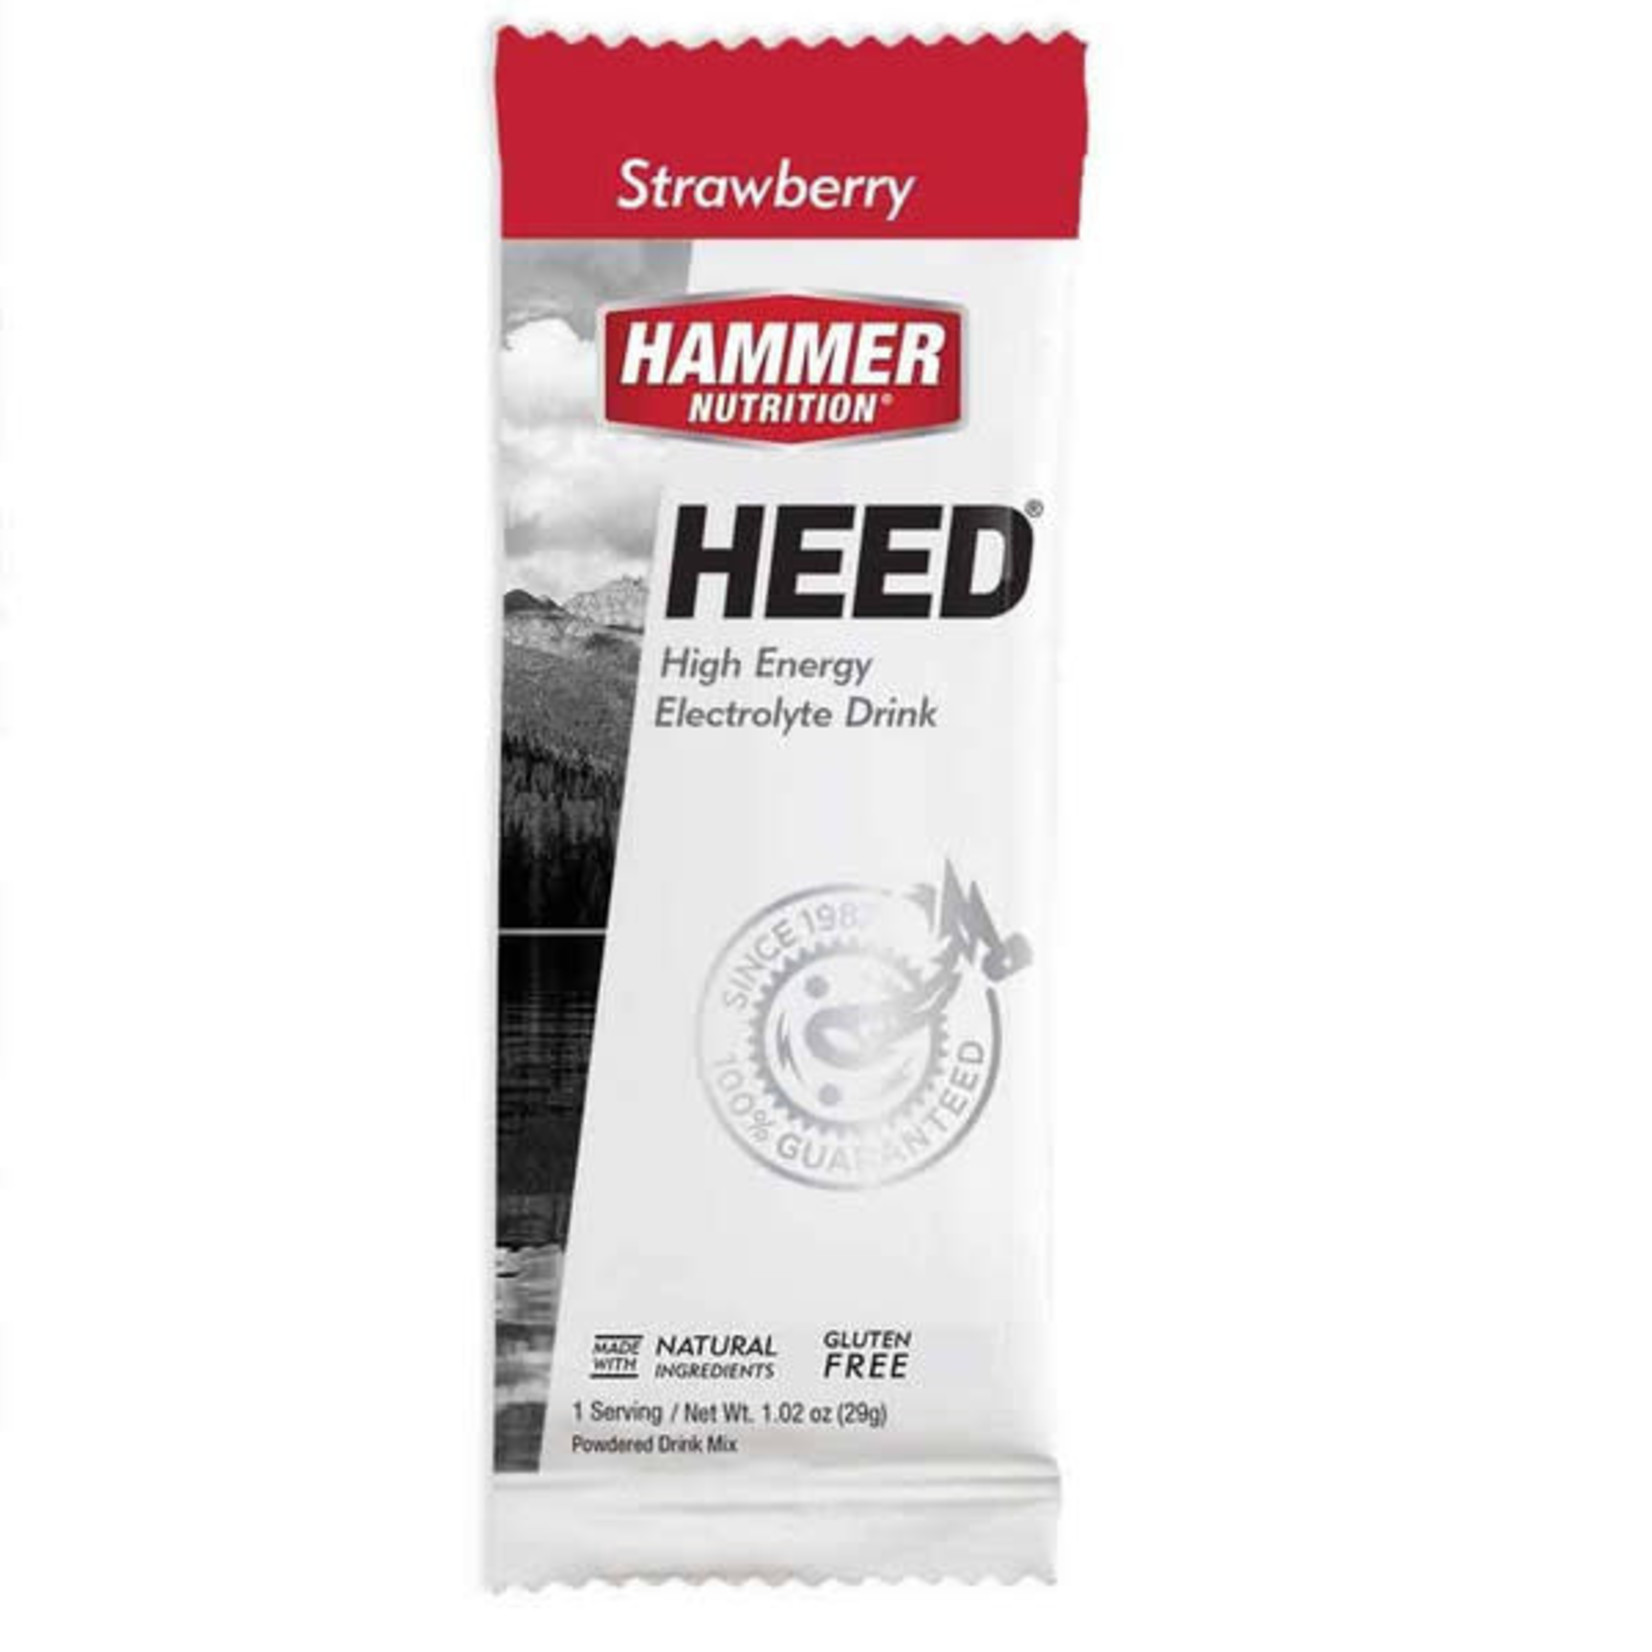 Hammer Nutrition Hammer HEED 1 Serving Packet